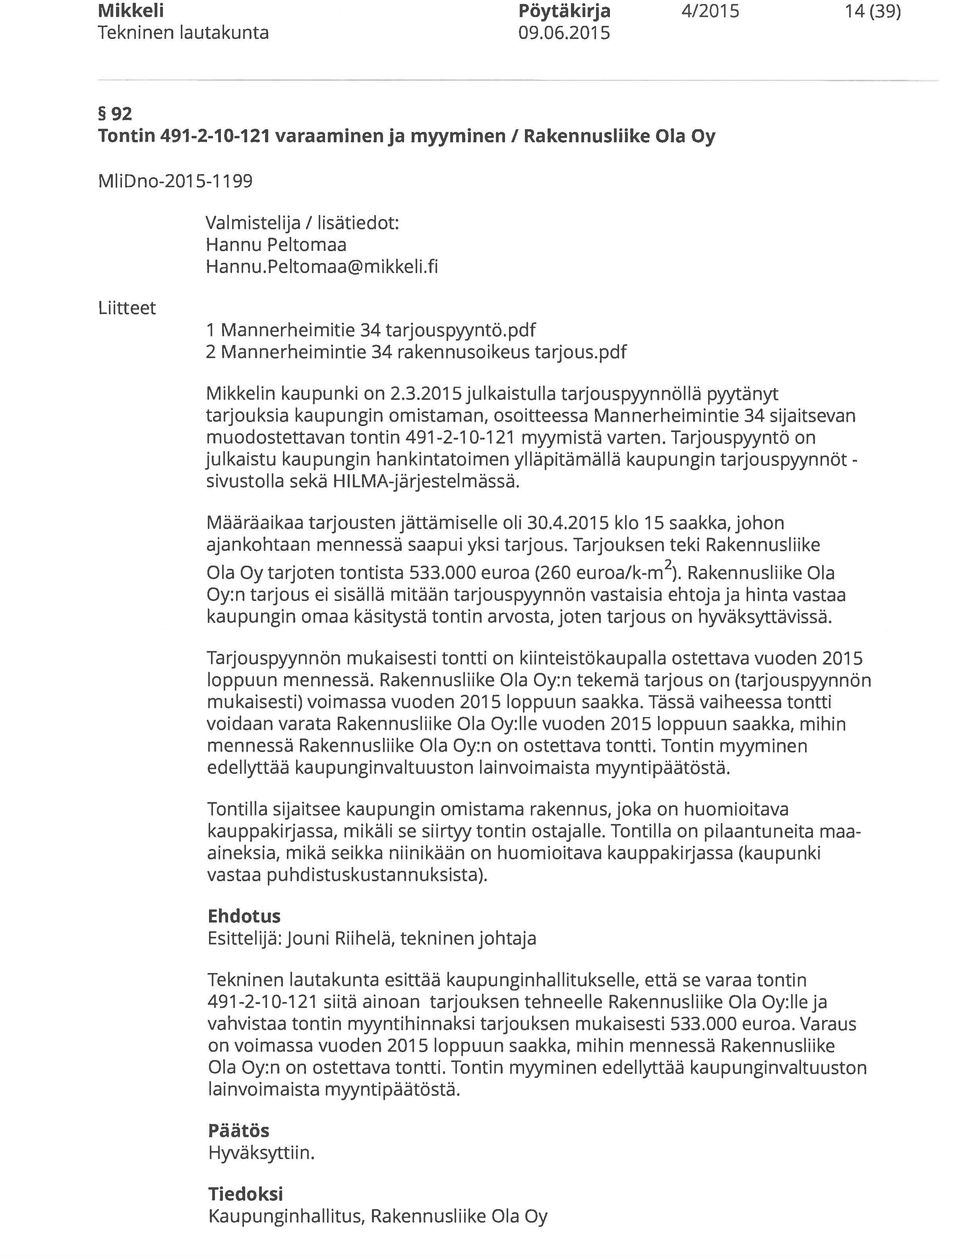 tarjouspyyntö.pdf 2 Mannerheimintie 34